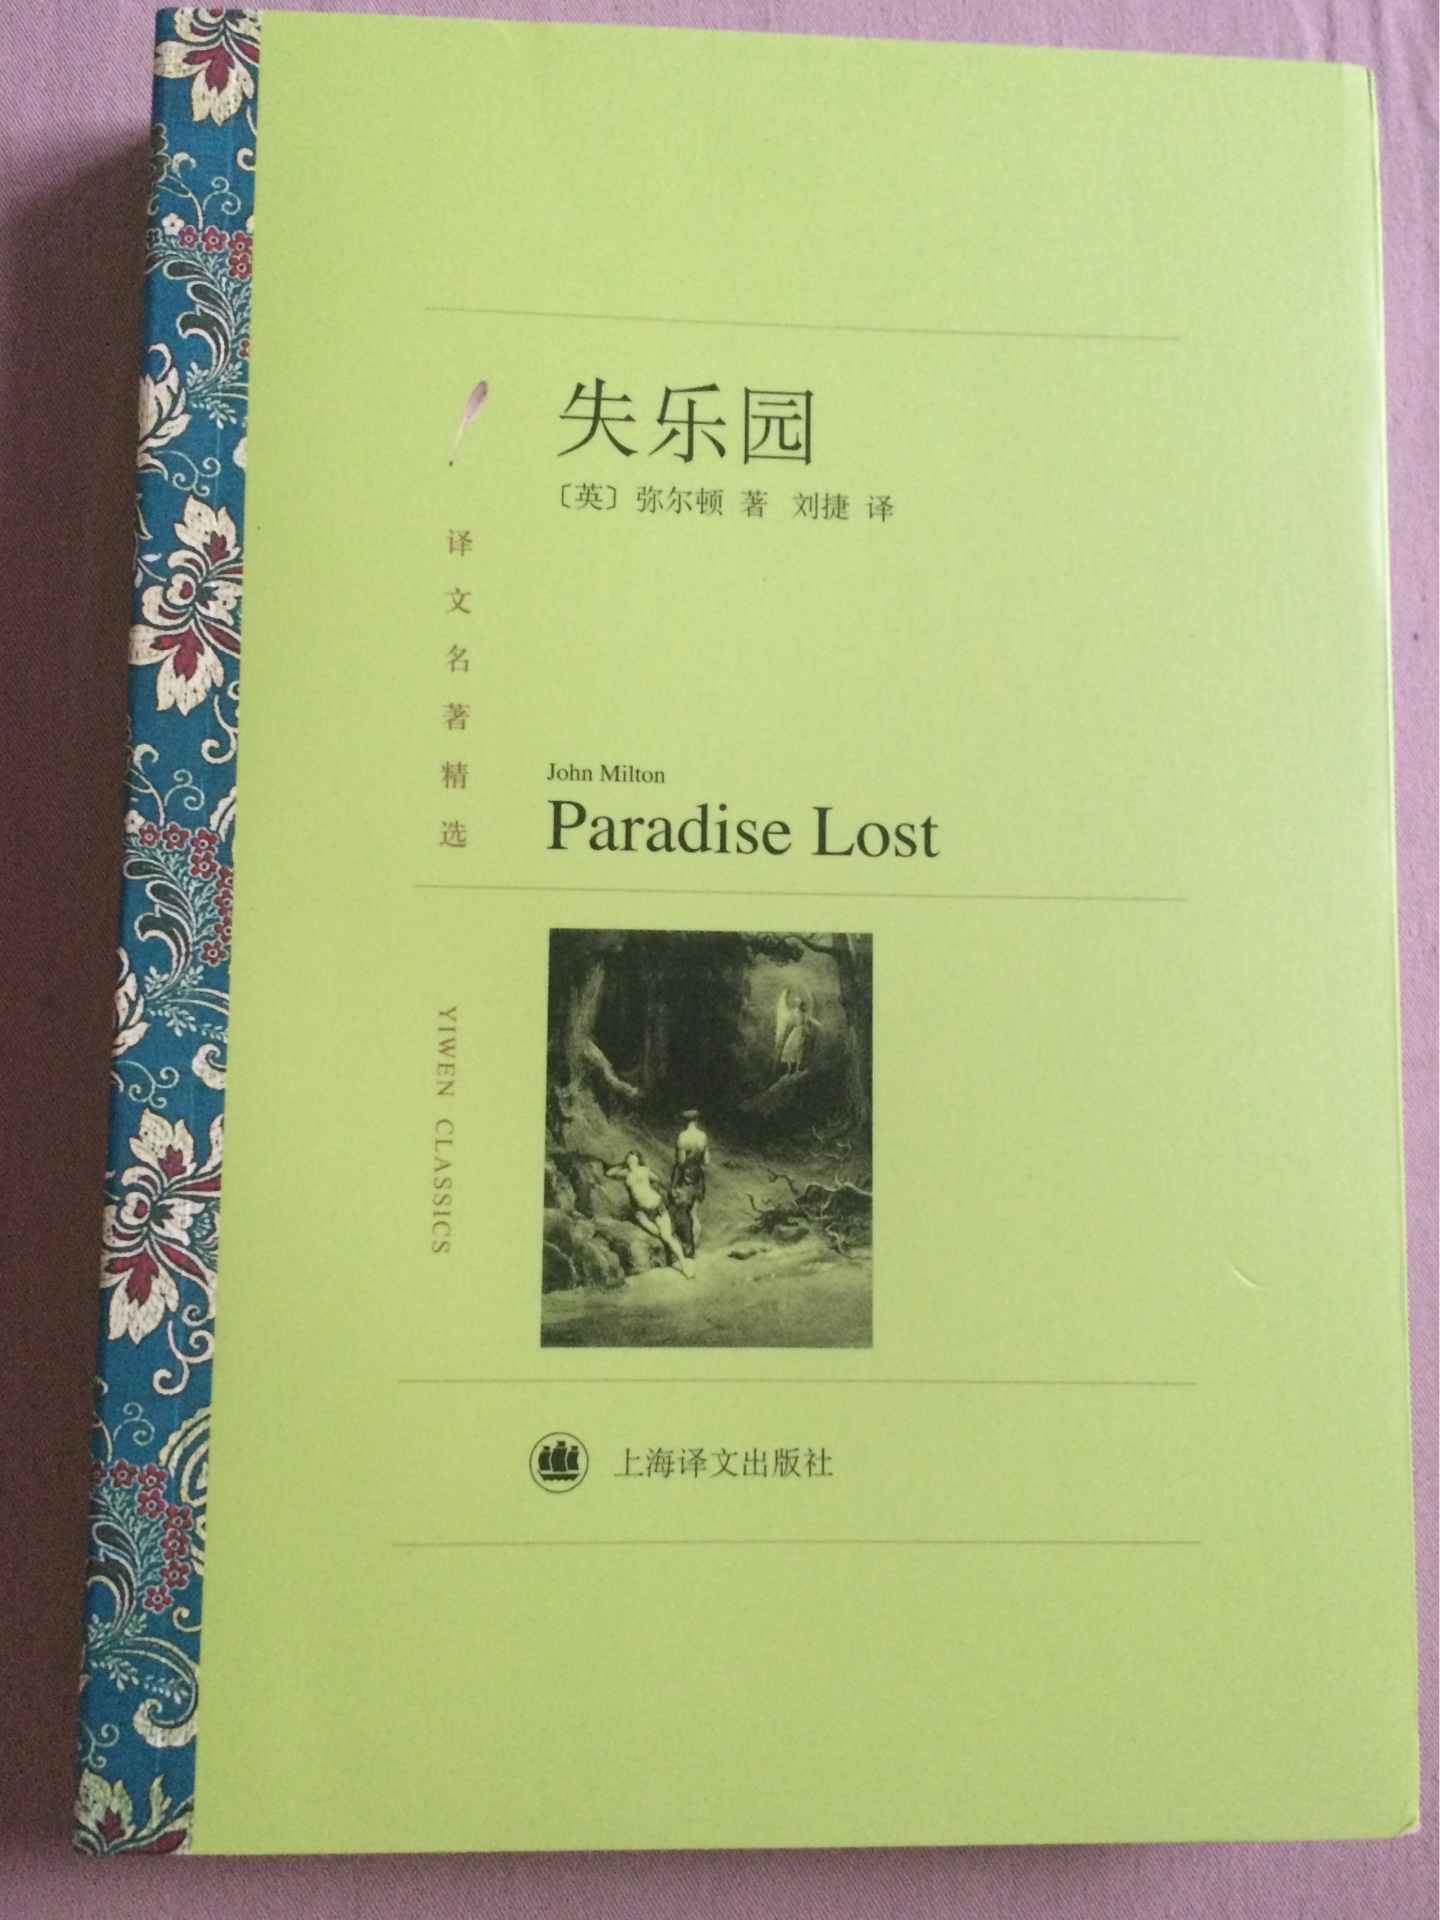 上海译文的这套书我很喜欢，译者的翻译水平也很高，活动期间购买，以后慢慢读